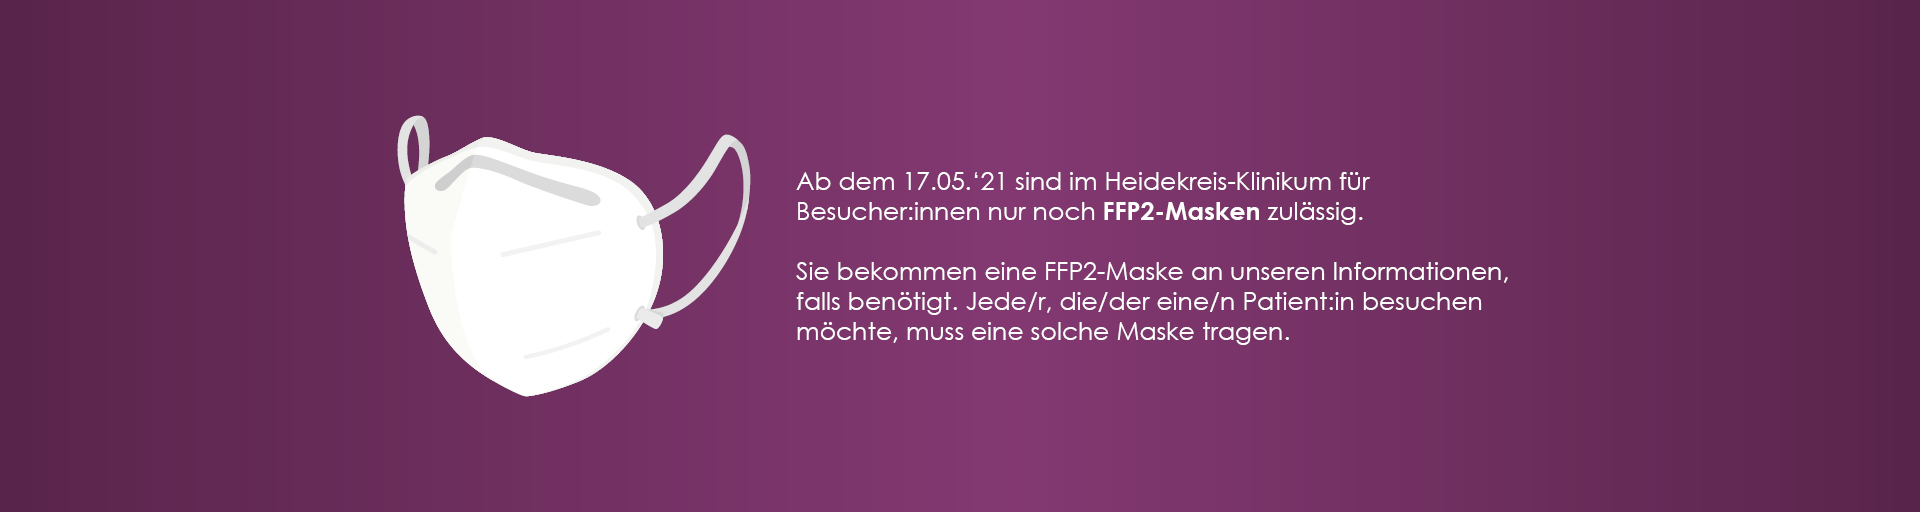 Ab dem 17.05.2021 sind nur noch FFP2-Masken im Heidekreis-Klinikum zulässig.